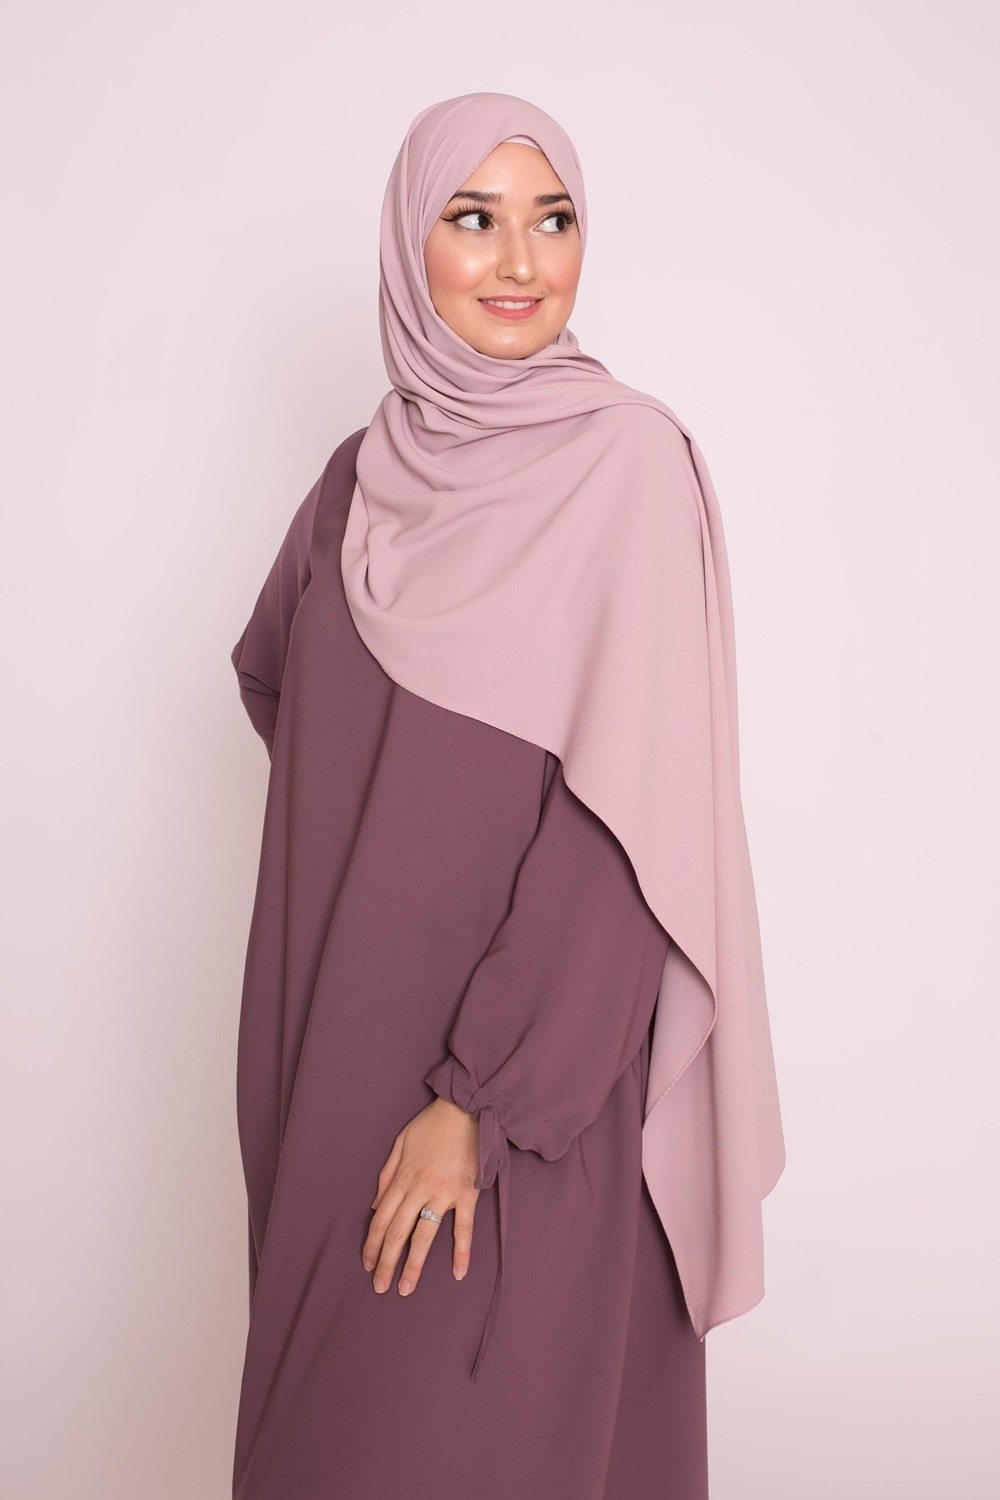 Pink lilac Medina silk hijab